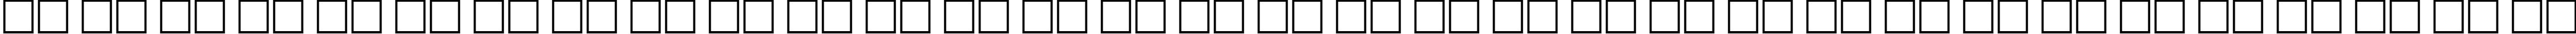 Пример написания русского алфавита шрифтом BookmanCTT Italic